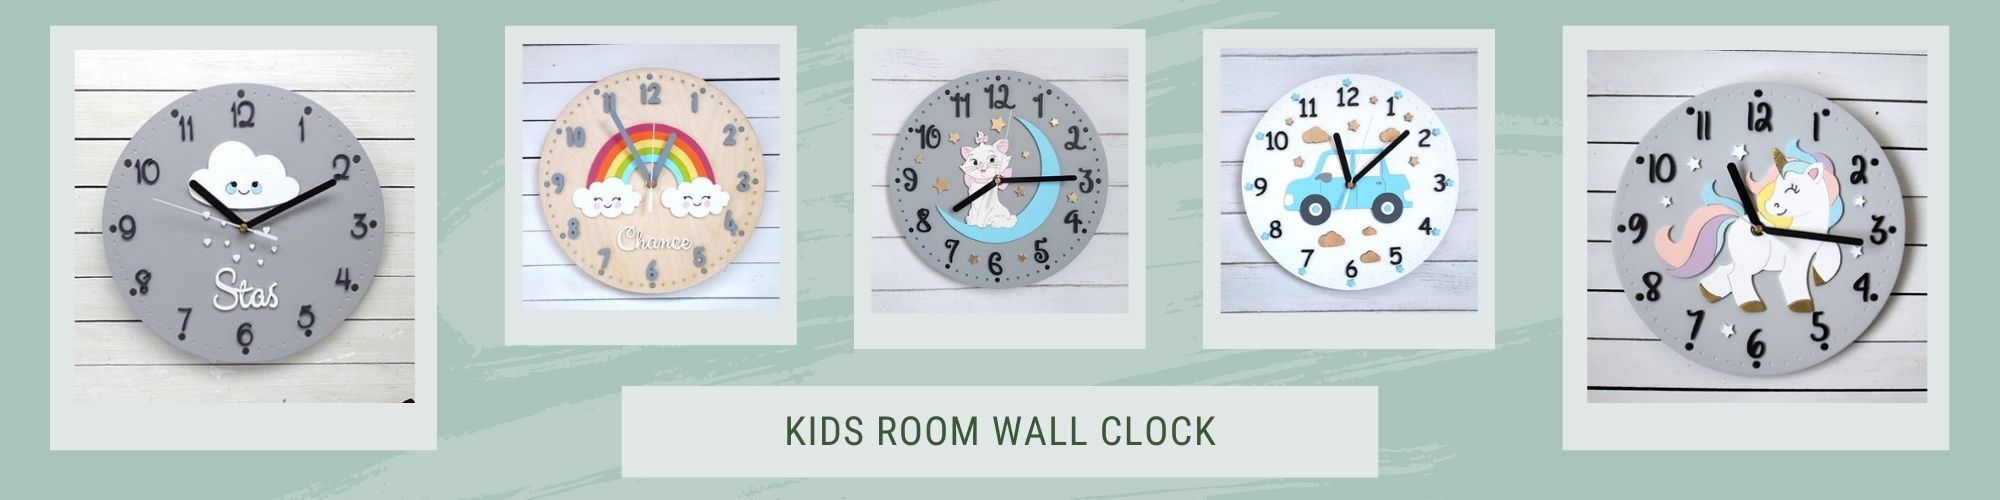 Kids Room Wall Clock